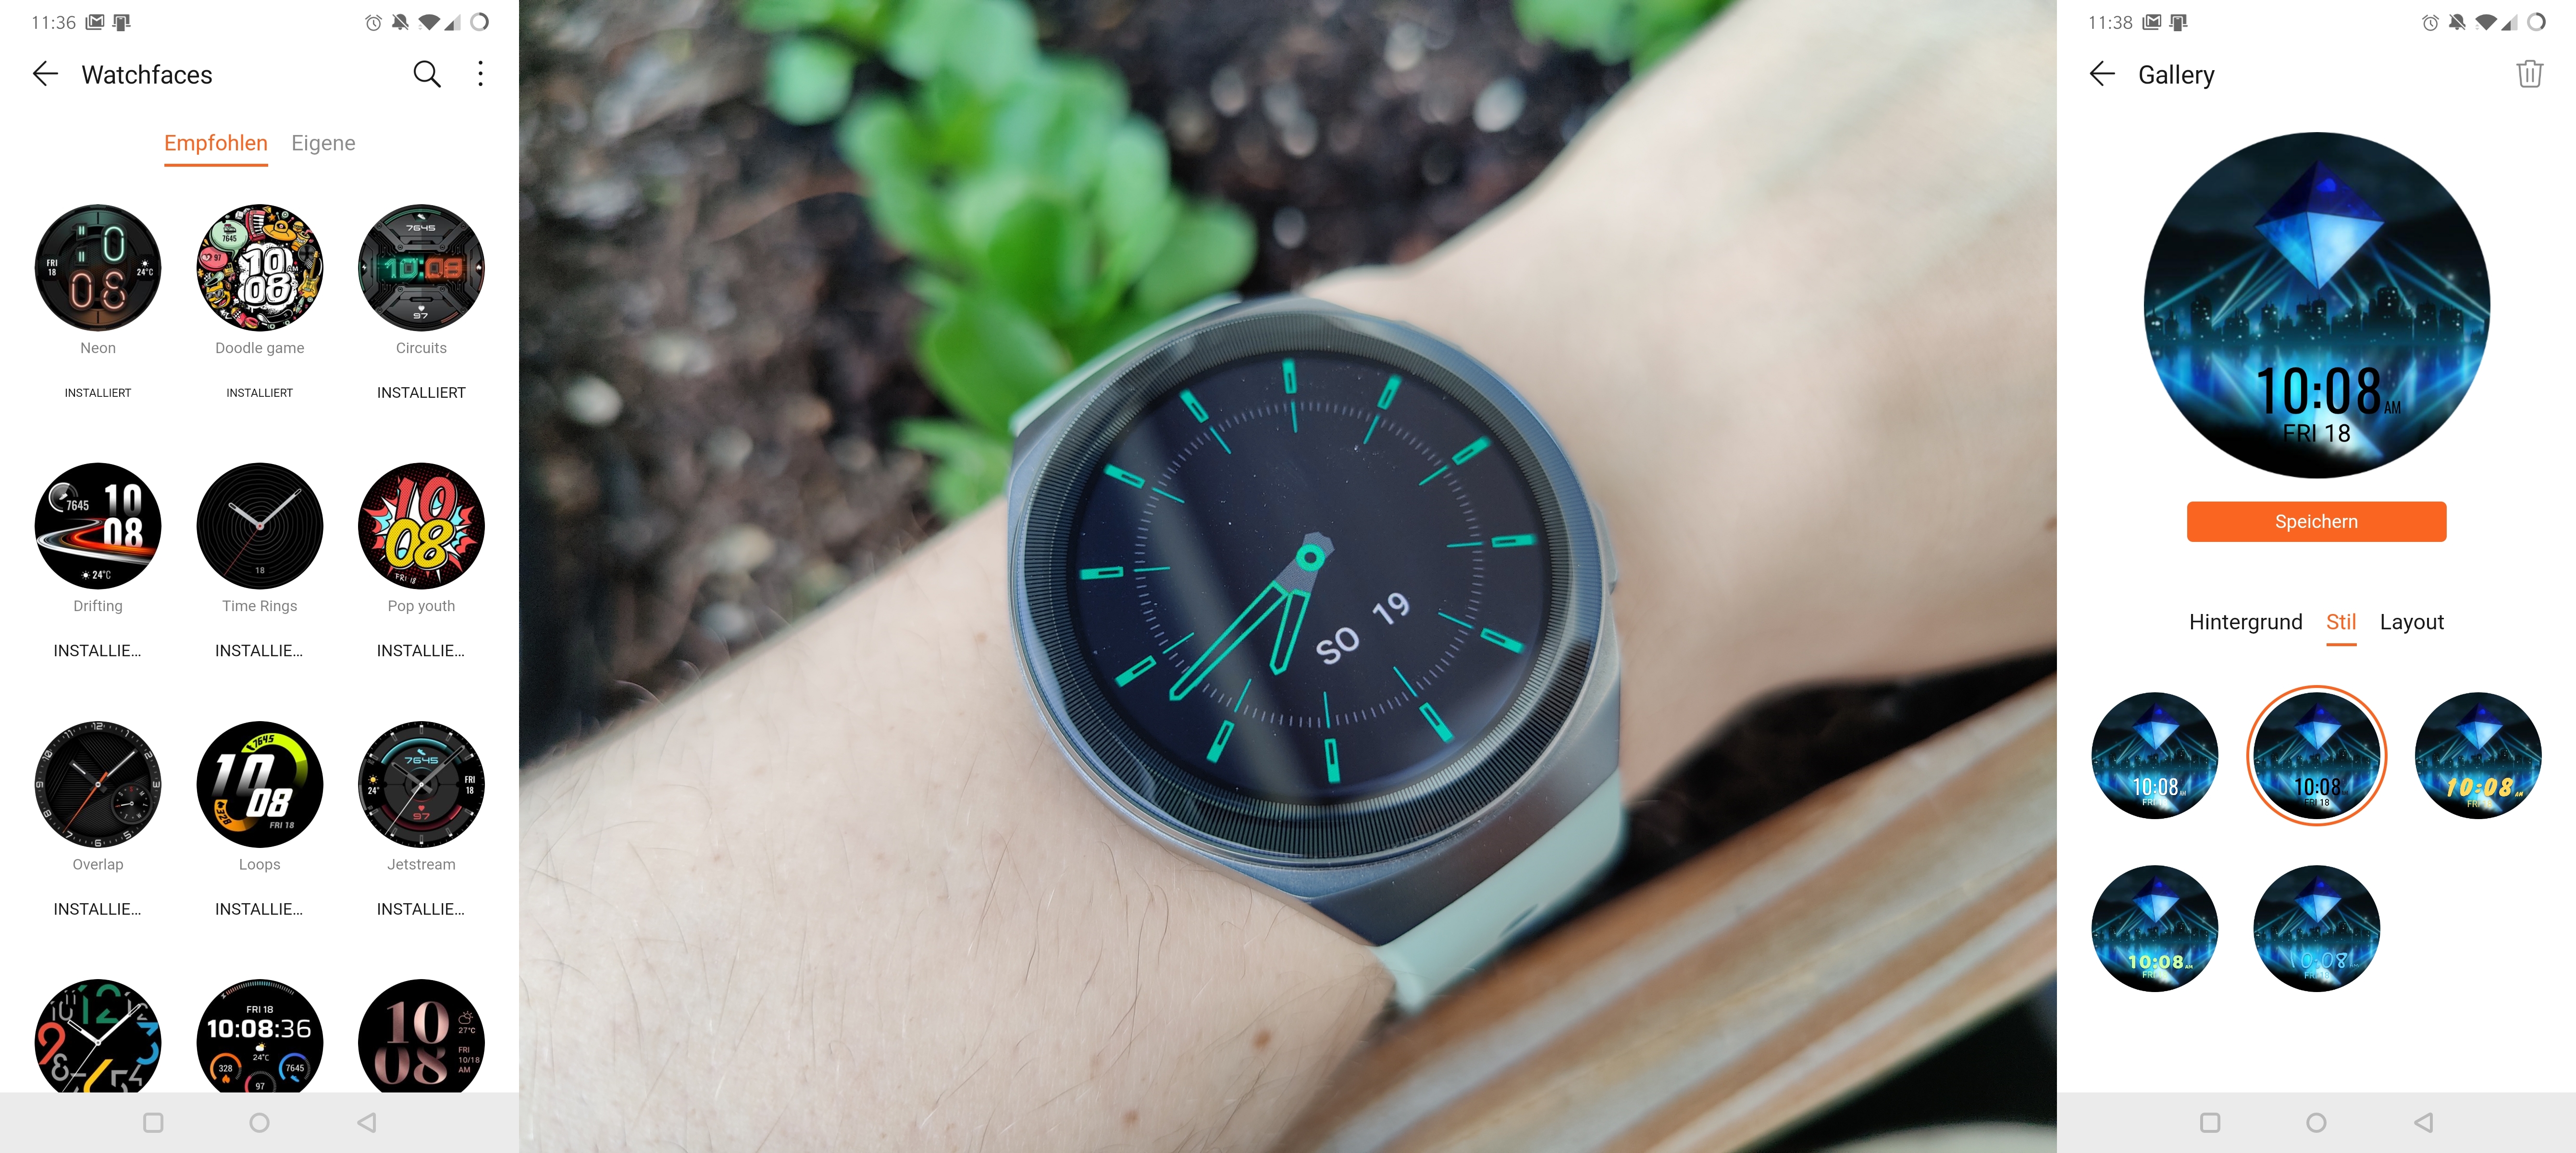 Huawei watch gt установить приложение. Циферблаты на умные часы Хуавей. Смарт часы Huawei watch приложении. LCD watchface Huawei watch. Защитный чехол для смарт часов Huawei watch.